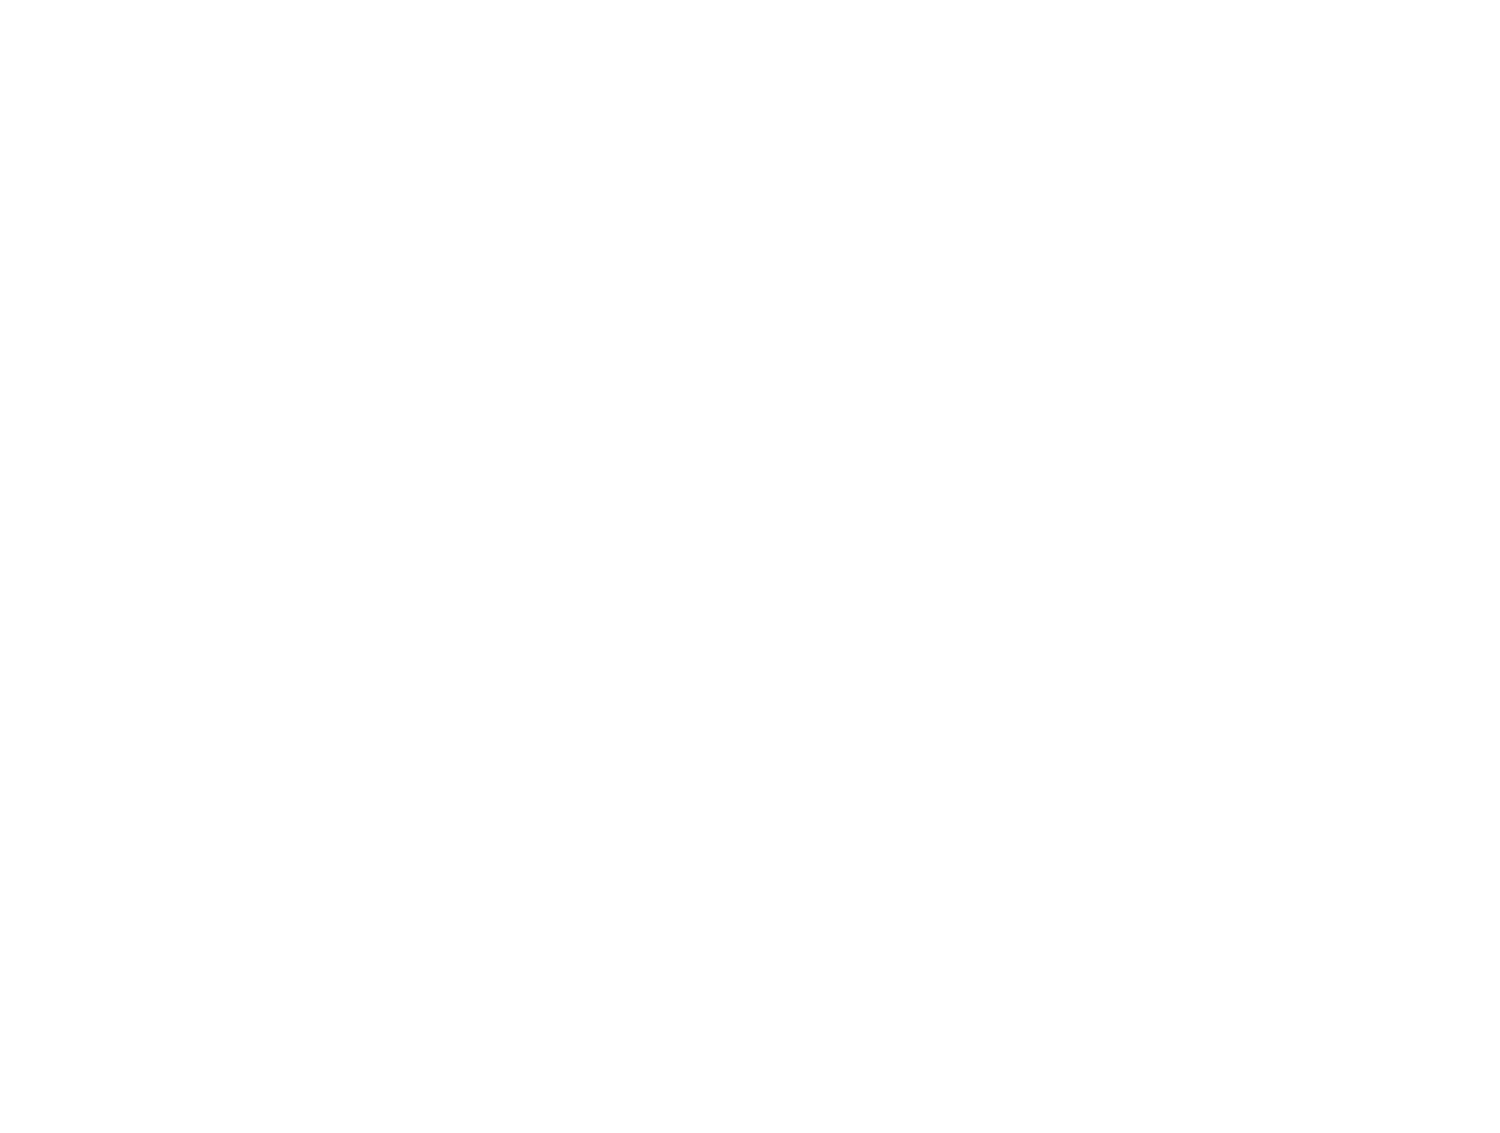 ATLAS PARTNERS